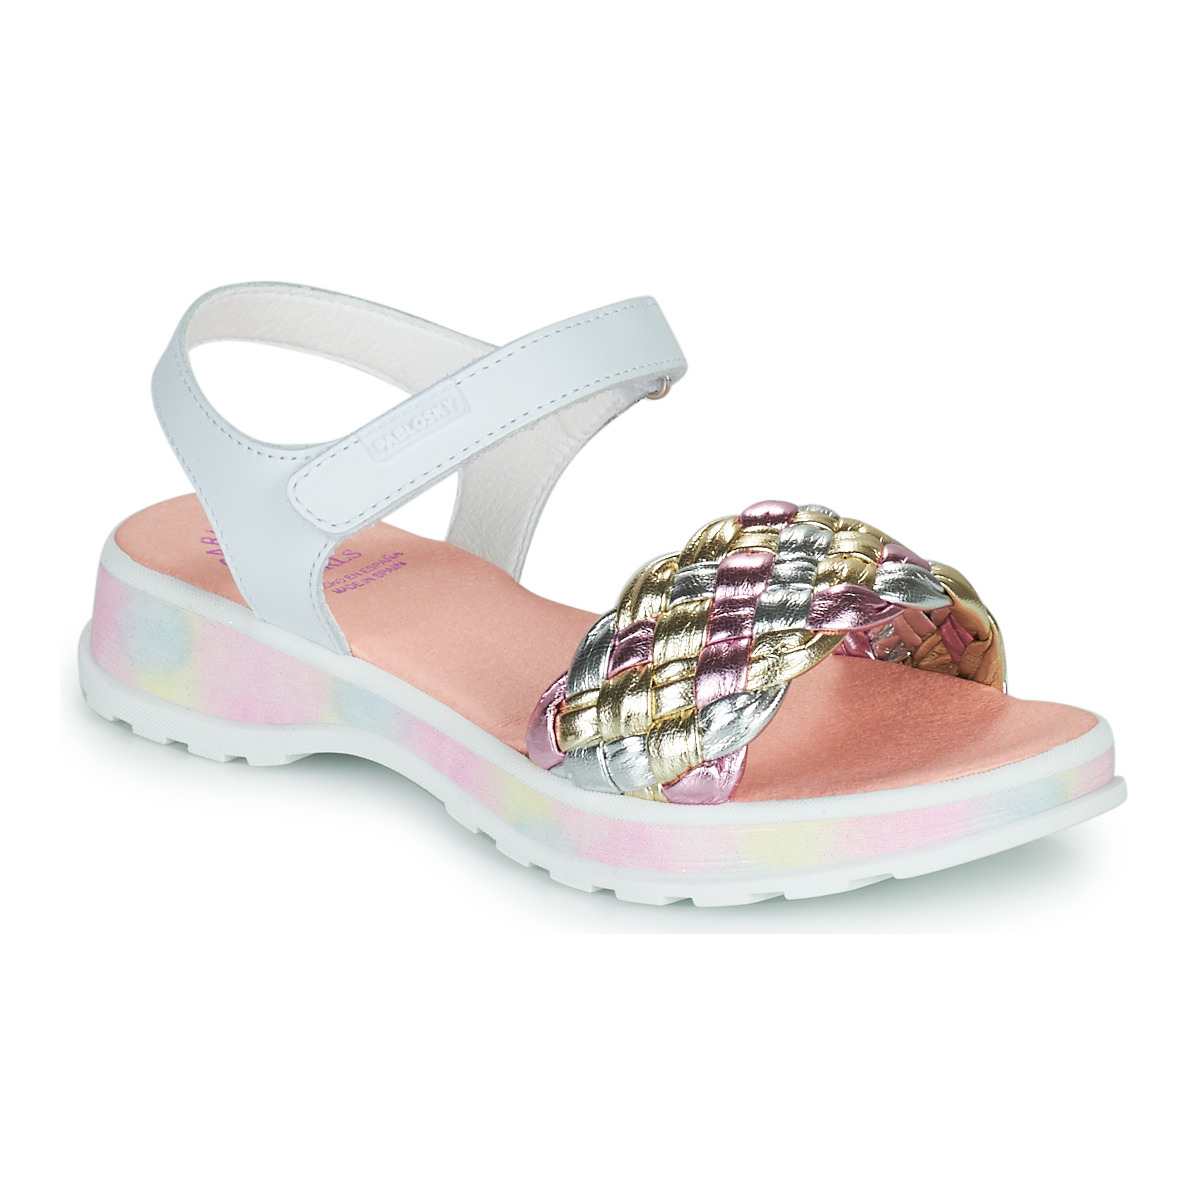 Schoenen Meisjes Sandalen / Open schoenen Pablosky TOREN Wit / Multicolour